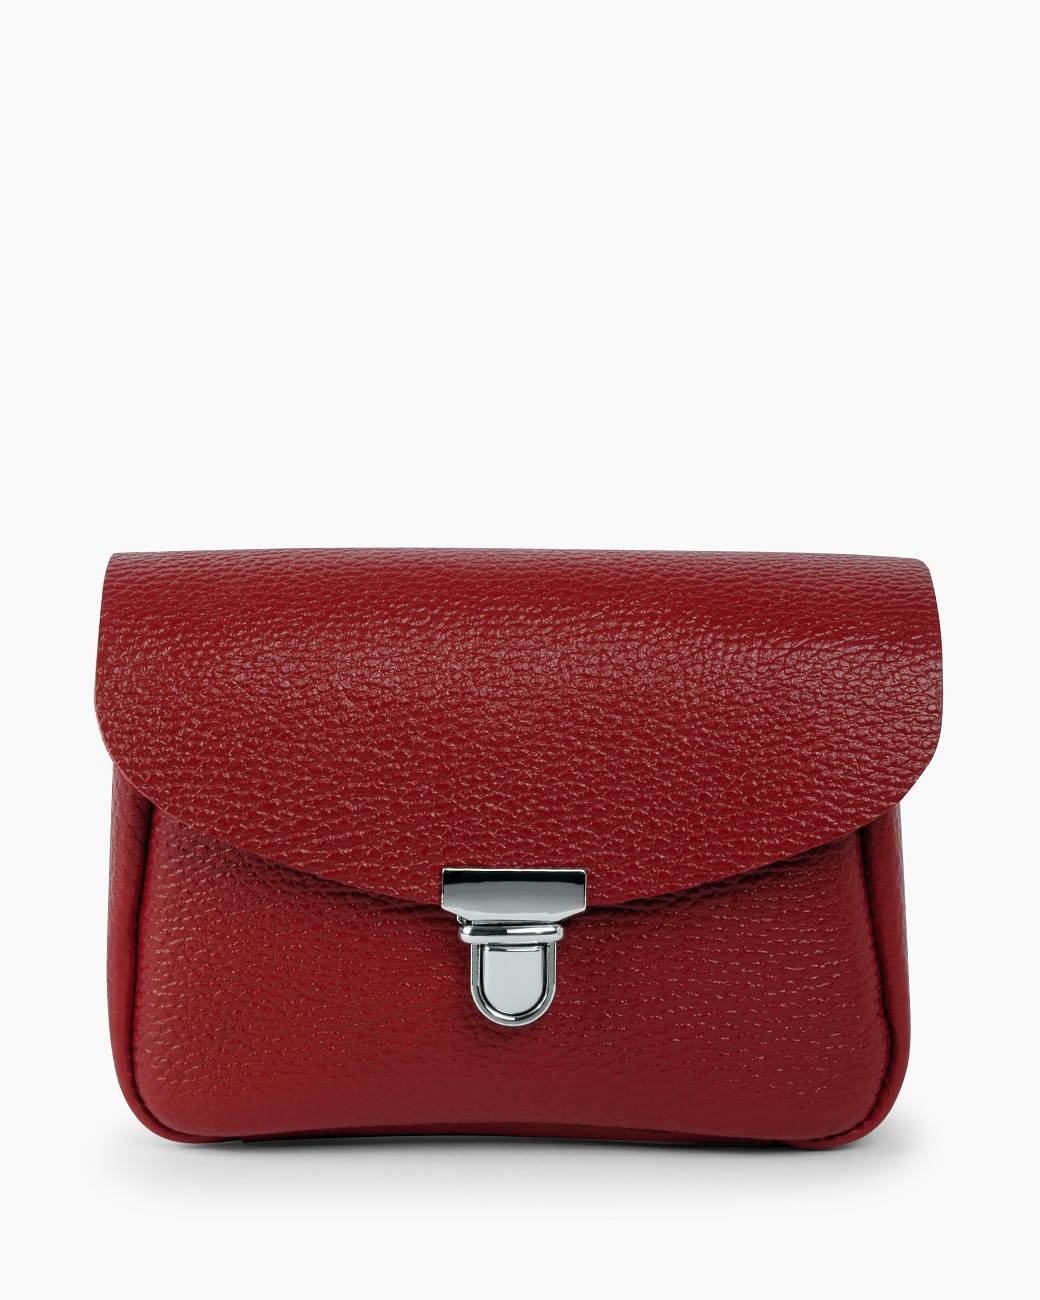 Женская сумка через плечо из натуральной кожи красная A001 ruby mini grain